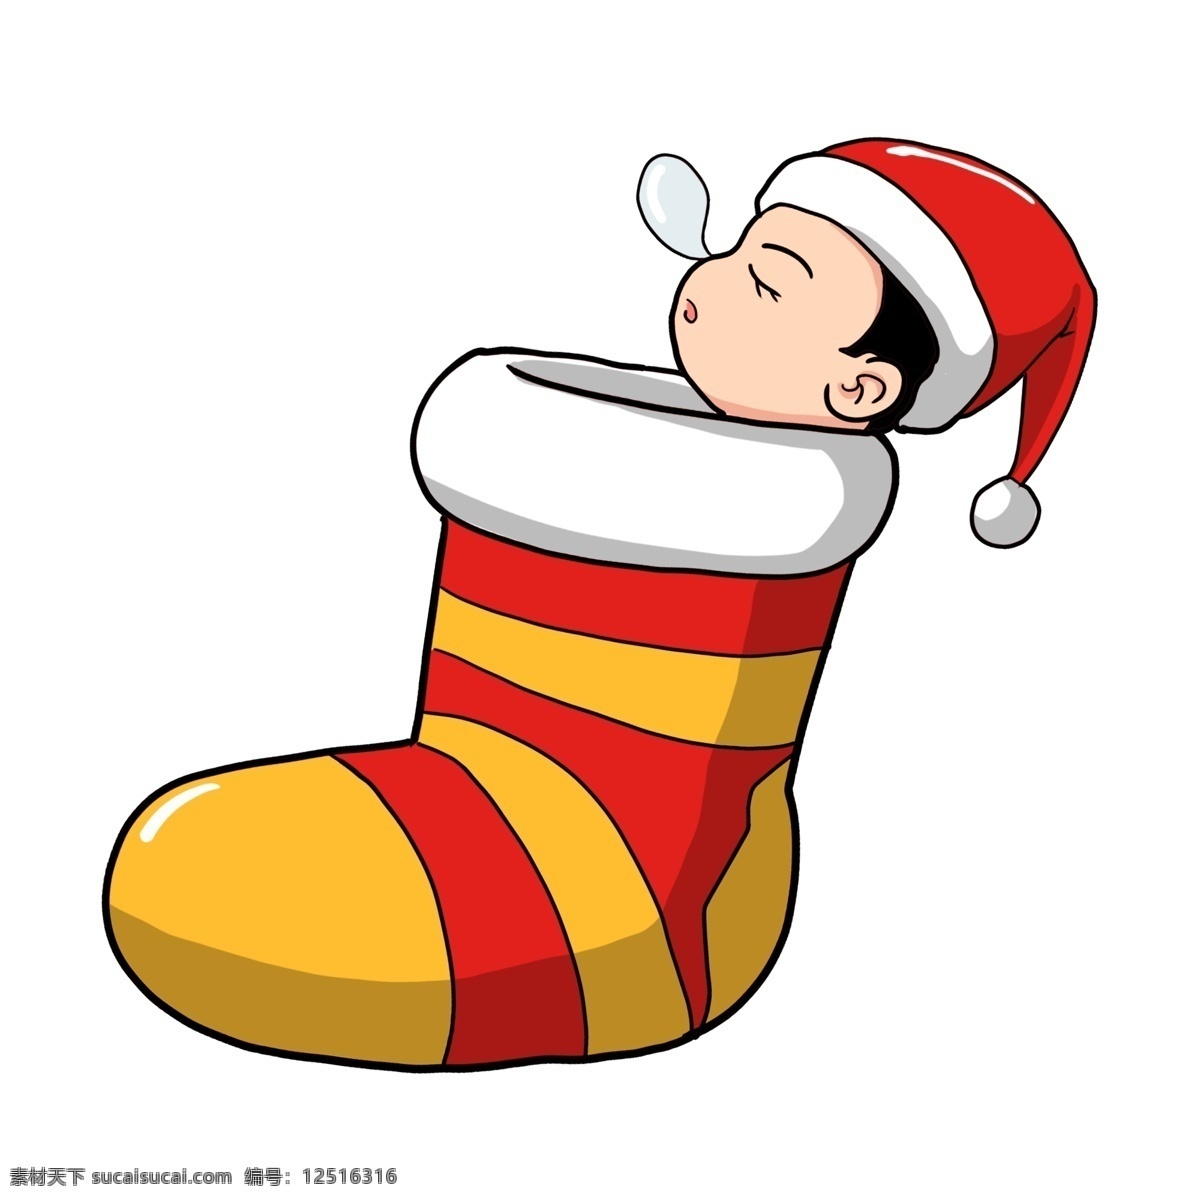 卡通 手绘 圣诞 袜 里 瞌睡 小孩 插画 圣诞袜子 长筒袜 彩色条纹 红色 黄色 圣诞帽 打瞌睡 可爱 有趣 圣诞节 冬季 卡通手绘